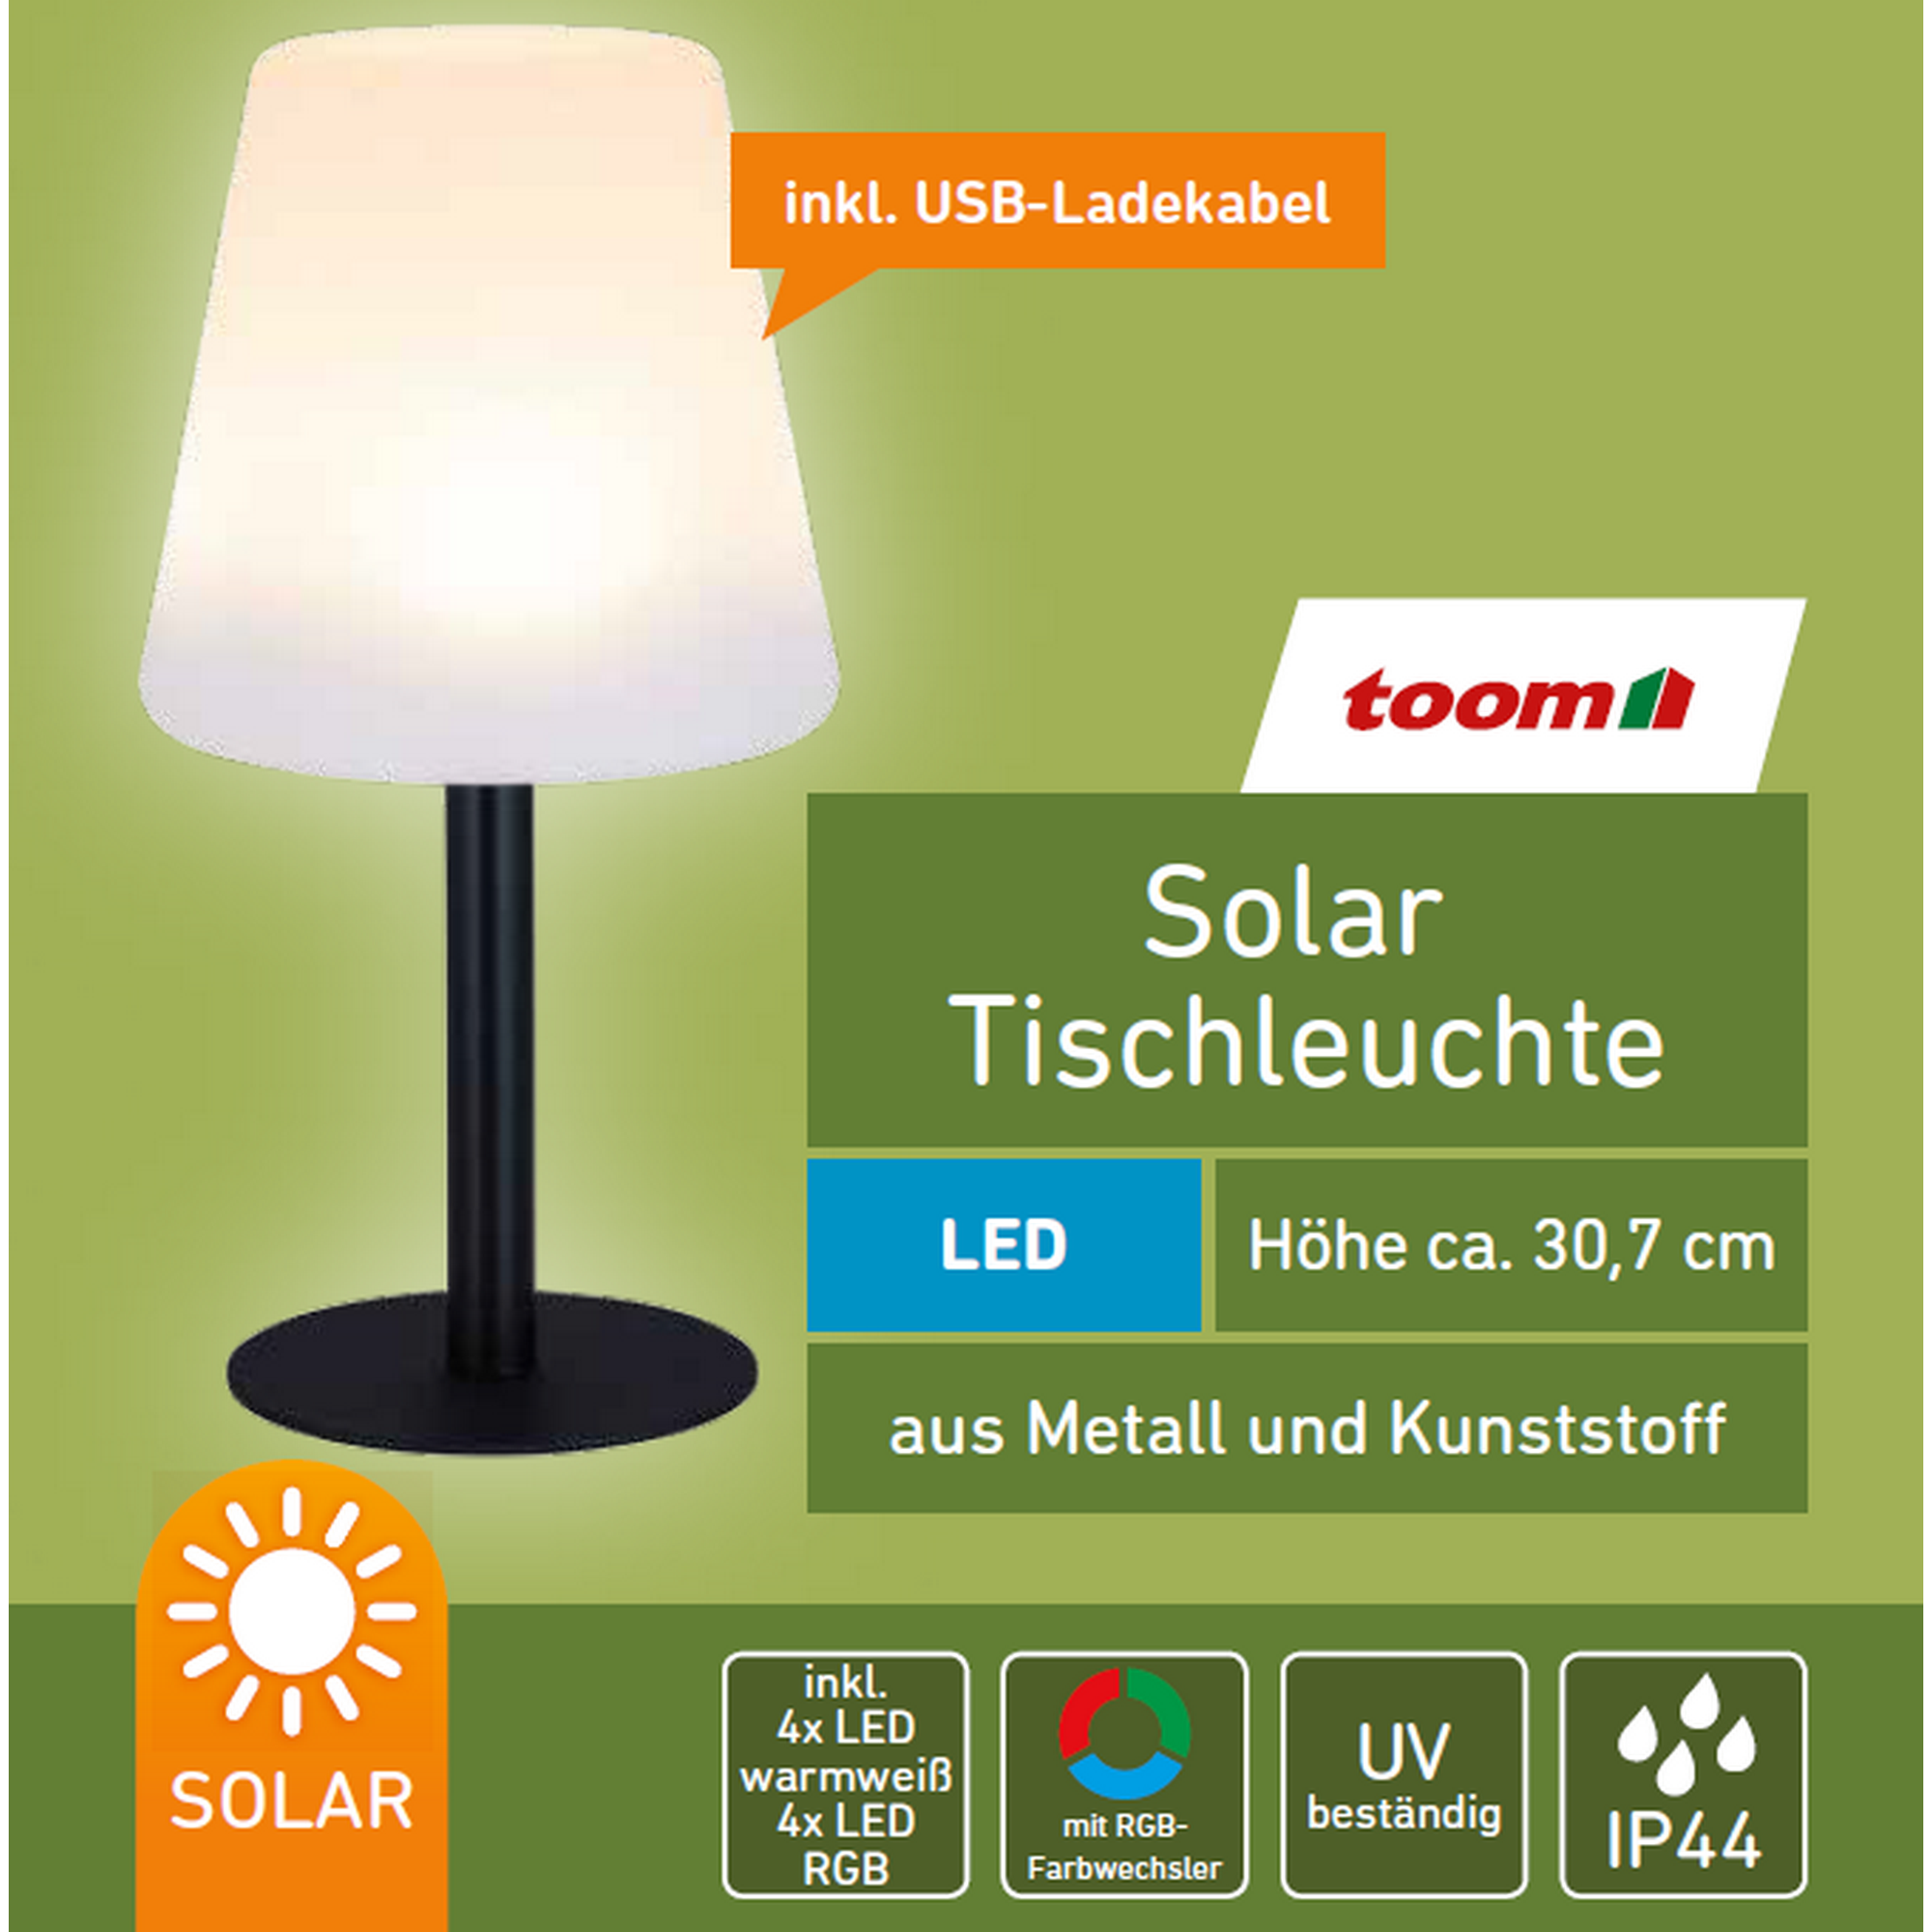 Solar-Tischleuchte mit Farbwechsler schwarz/weiß Ø 15,5 x 30,7 cm + product picture